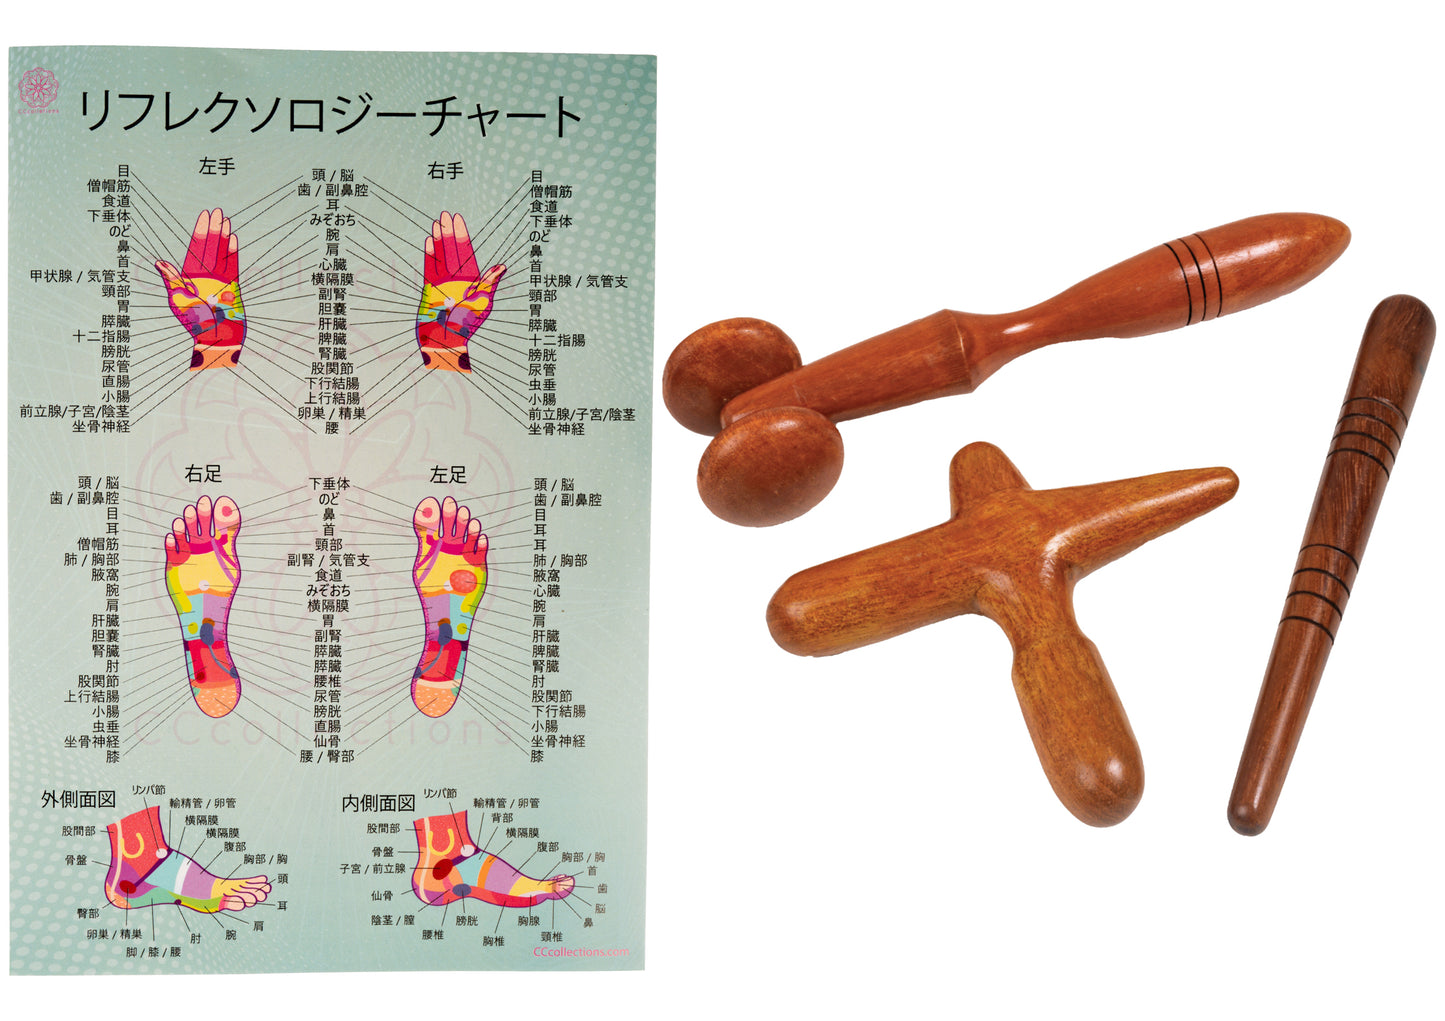 手足リフレクソロジースティック - 木製の伝統的なマッサージ用品 | CCcollections - CCCollections